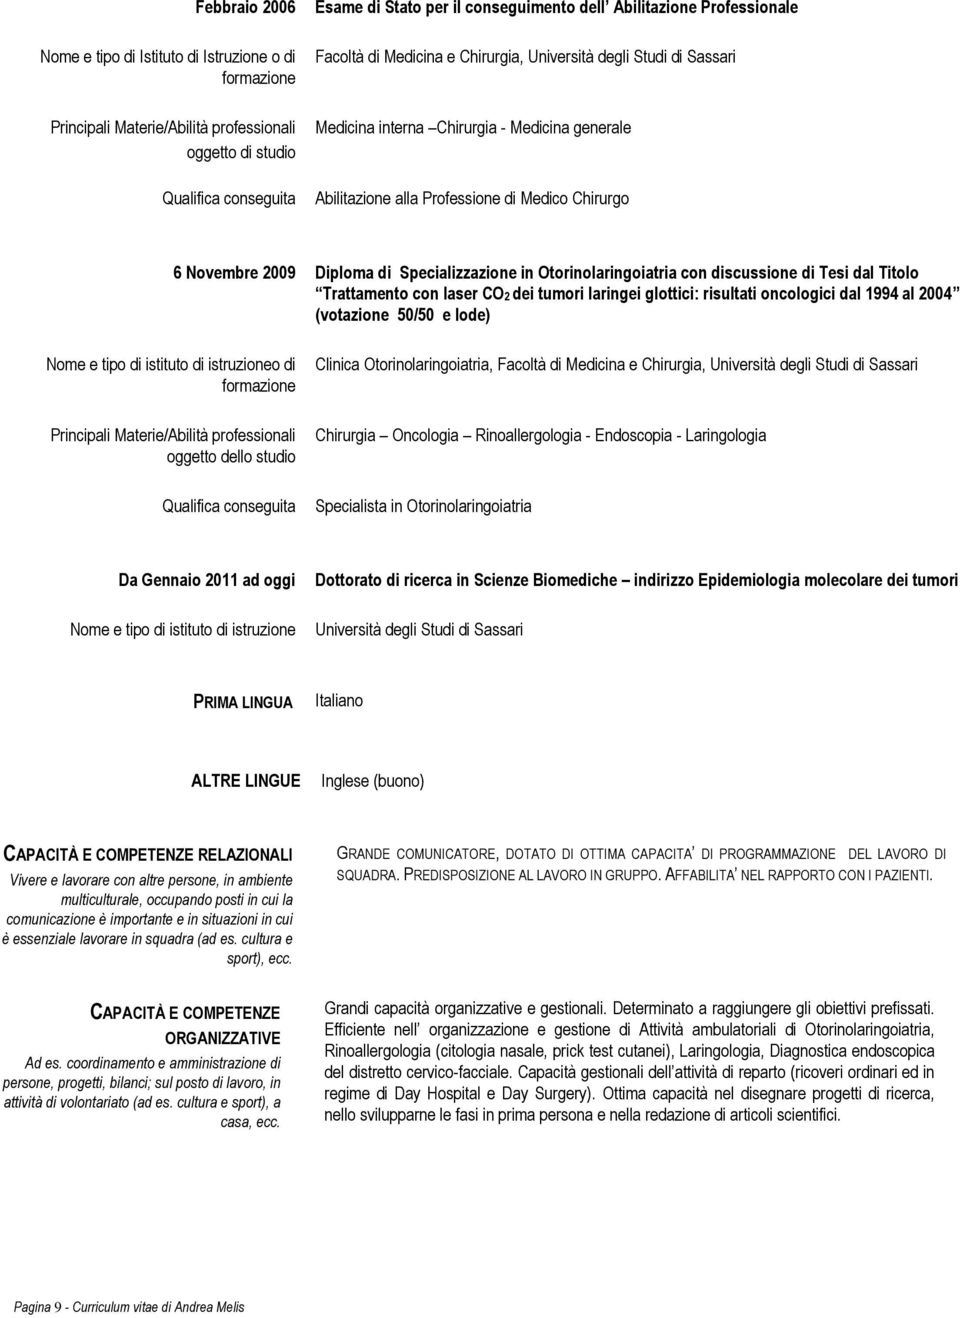 Novembre 2009 Diploma di Specializzazione in Otorinolaringoiatria con discussione di Tesi dal Titolo Trattamento con laser CO2 dei tumori laringei glottici: risultati oncologici dal 1994 al 2004